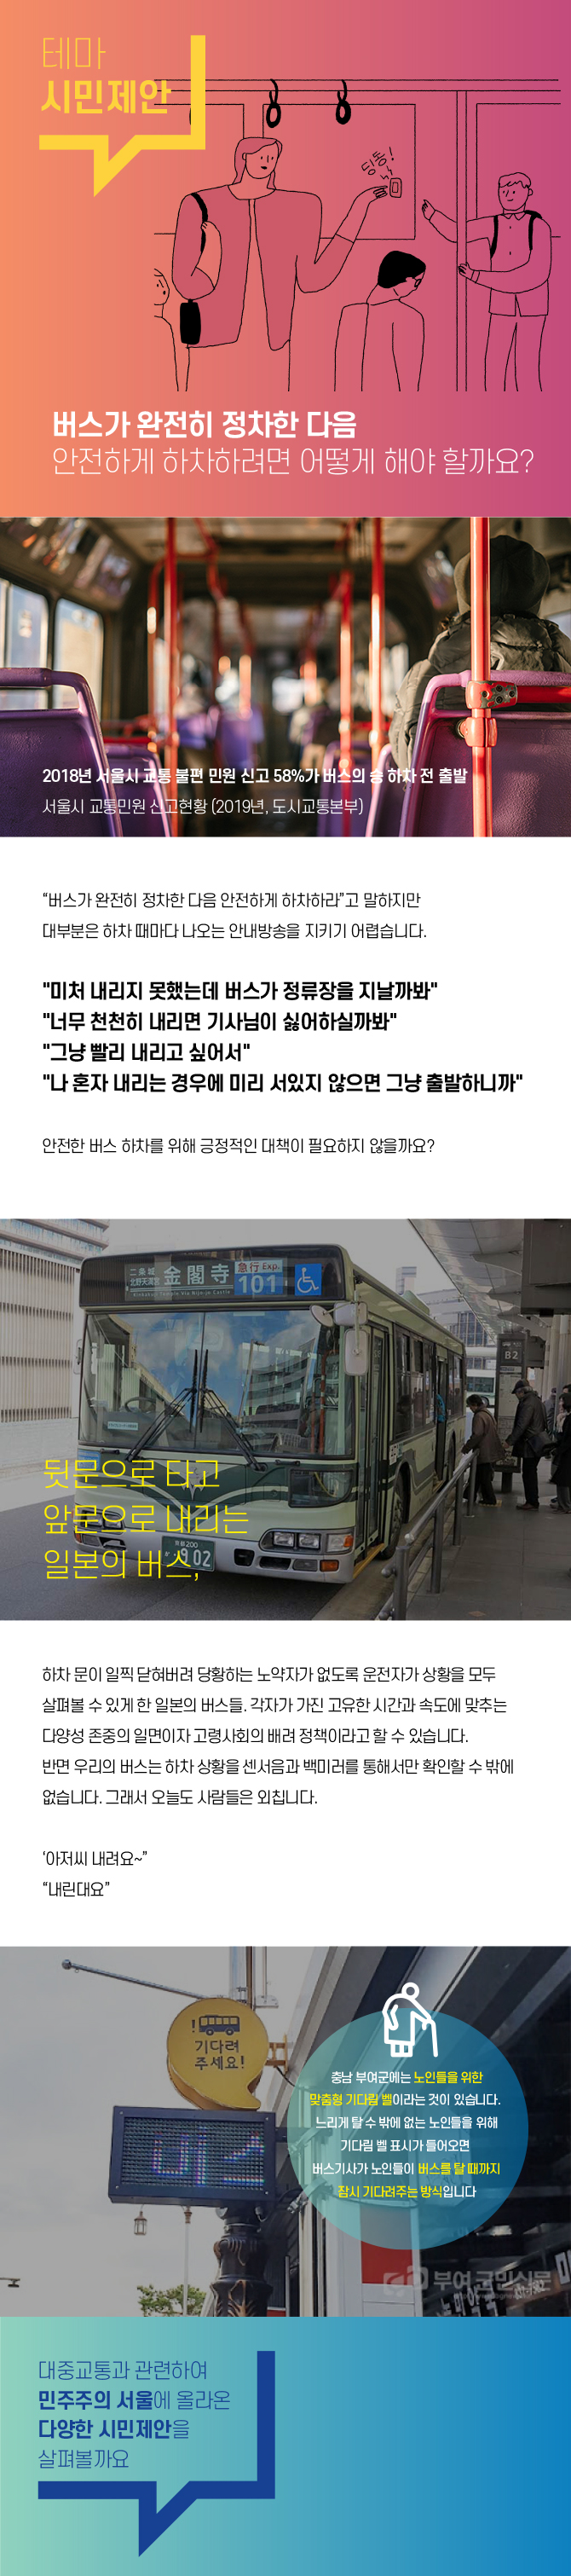 버스가 완전히 정차한다음 안전하게 하차하려면 어떻게 해야 할까요? - 2018년 서울시 교통 불편 민원 신고 58%가 버스의 승 하차 전 출발, 서울시 교통 민원 신고현황(2019년, 도시교통본부) - 버스가 완전히 정차한 다음 안전하게 하차하라 고 말하지만 대부분은 하차 때마다 나오는 안내방송을 지키기 어렵습니다. 미쳐 내리지 못했는데 버스가 정류장을 지날까봐,너무천천히 내리면 기사님이 싫어할까봐, 그냥 빨리 내리고싶어서, 나 혼자 내리는 경우에 미리 서있지 않으면 그냥 출발하니까 - 안전한 버스 하차를 위해 긍정적인 대책이 필요하지 않을까요? 뒷문으로 타고 앞문으로 내리는 일본의 버스 - 하차 문이 일찍 닫혀버려 당황하는 노약자가 없도록 운전자가 상황을 모두 살펴볼 수 있게 한 일본의 버스들. 각자가 가진 고유한 시간과 속도에 맞추는 다양성 존중의 일면이자 고령사회의 배려 정책이라고 할 수 있습니다. 반면 우리의 버스는 하차 상황을 센서음과 백미러를 통해서만 확인할 수 밖에 없습니다. 그래서 오늘도 사람들은 외칩니다. 아저씨 내려요, 내린대요. 충남 부여군에는 노인들을 위한 맞춤형 기다림 벨이라는 것이 있습니다. 느리게 탈 수 밖에 없는 노인들을 위해 기다림 벨 표시가 들어오면 버스기사가 노인들이 버스를 탈 때 까지 잠시 기다려주는 방식입니다.